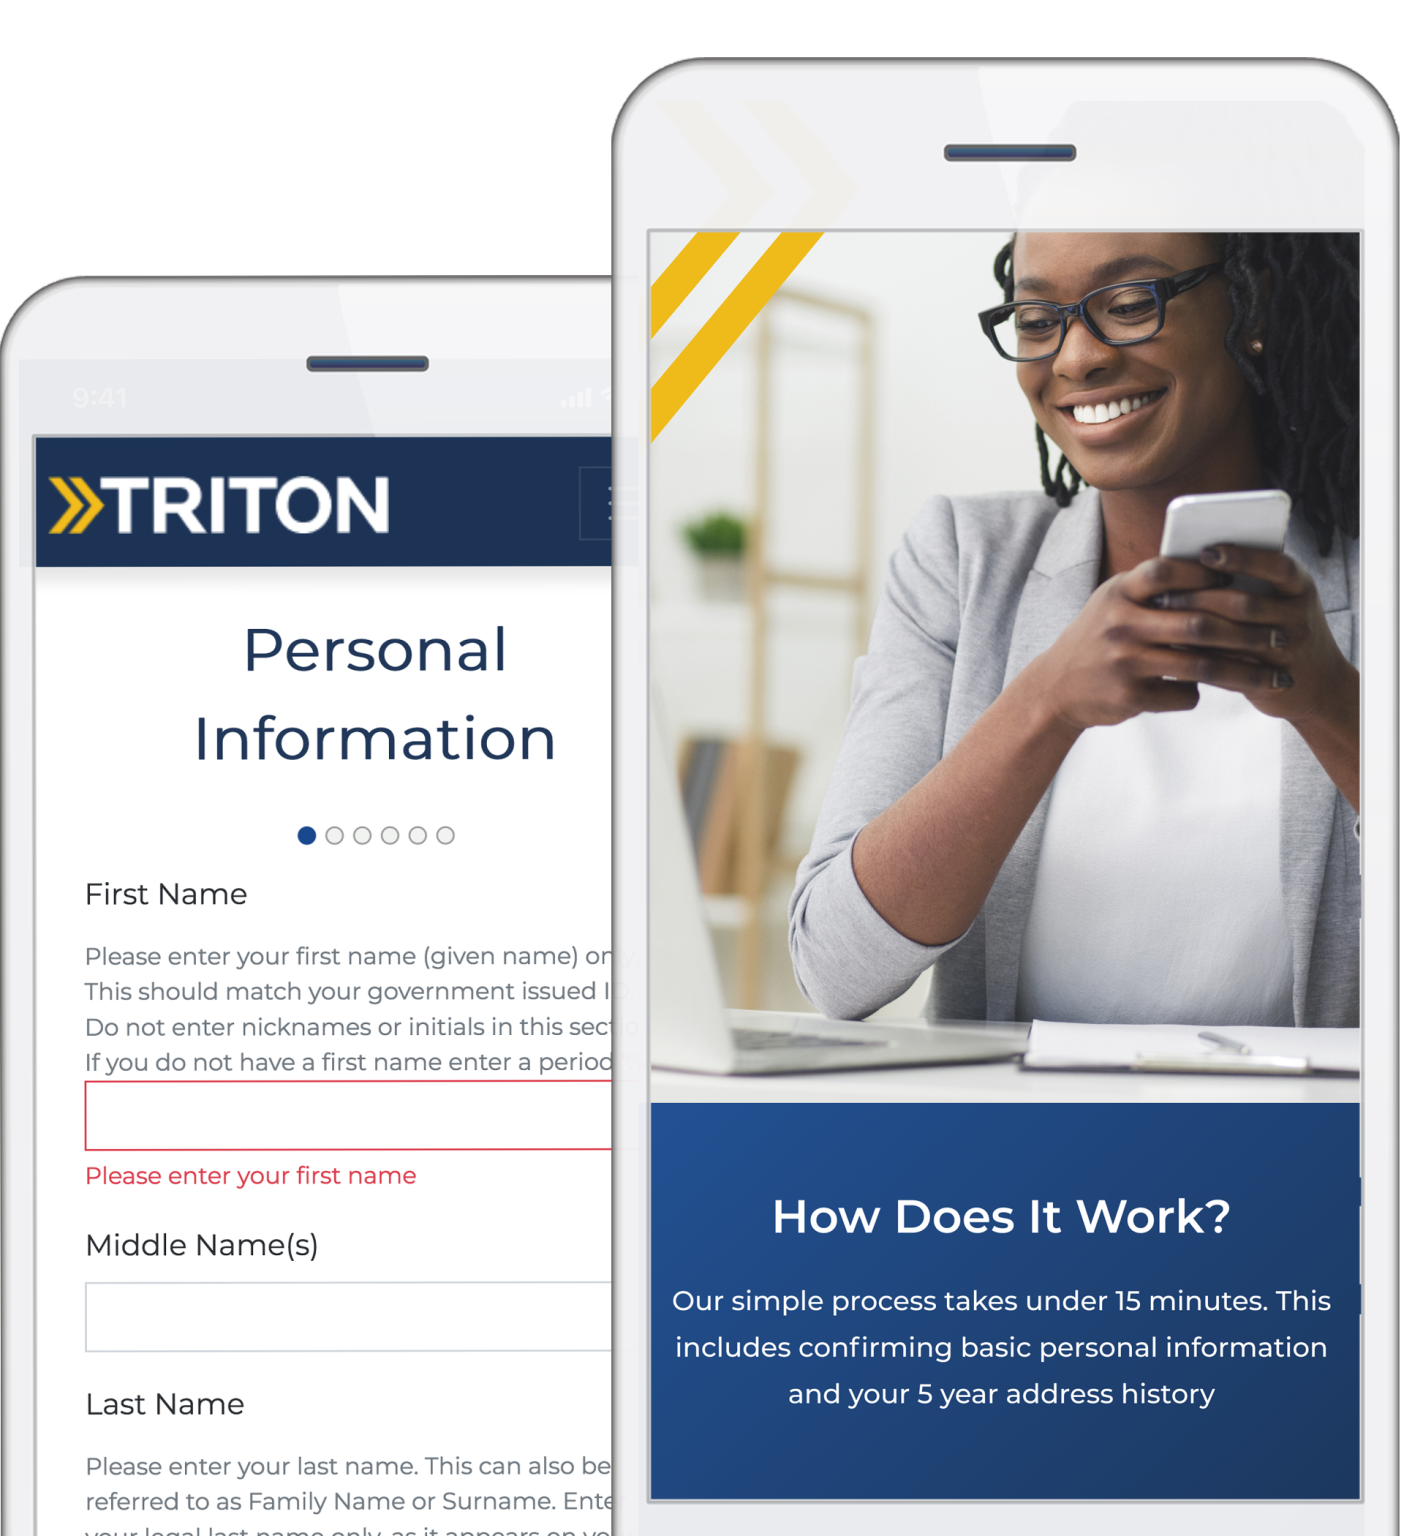 Image de l’application mobile de Triton sur l’écran d’un téléphone intelligent.